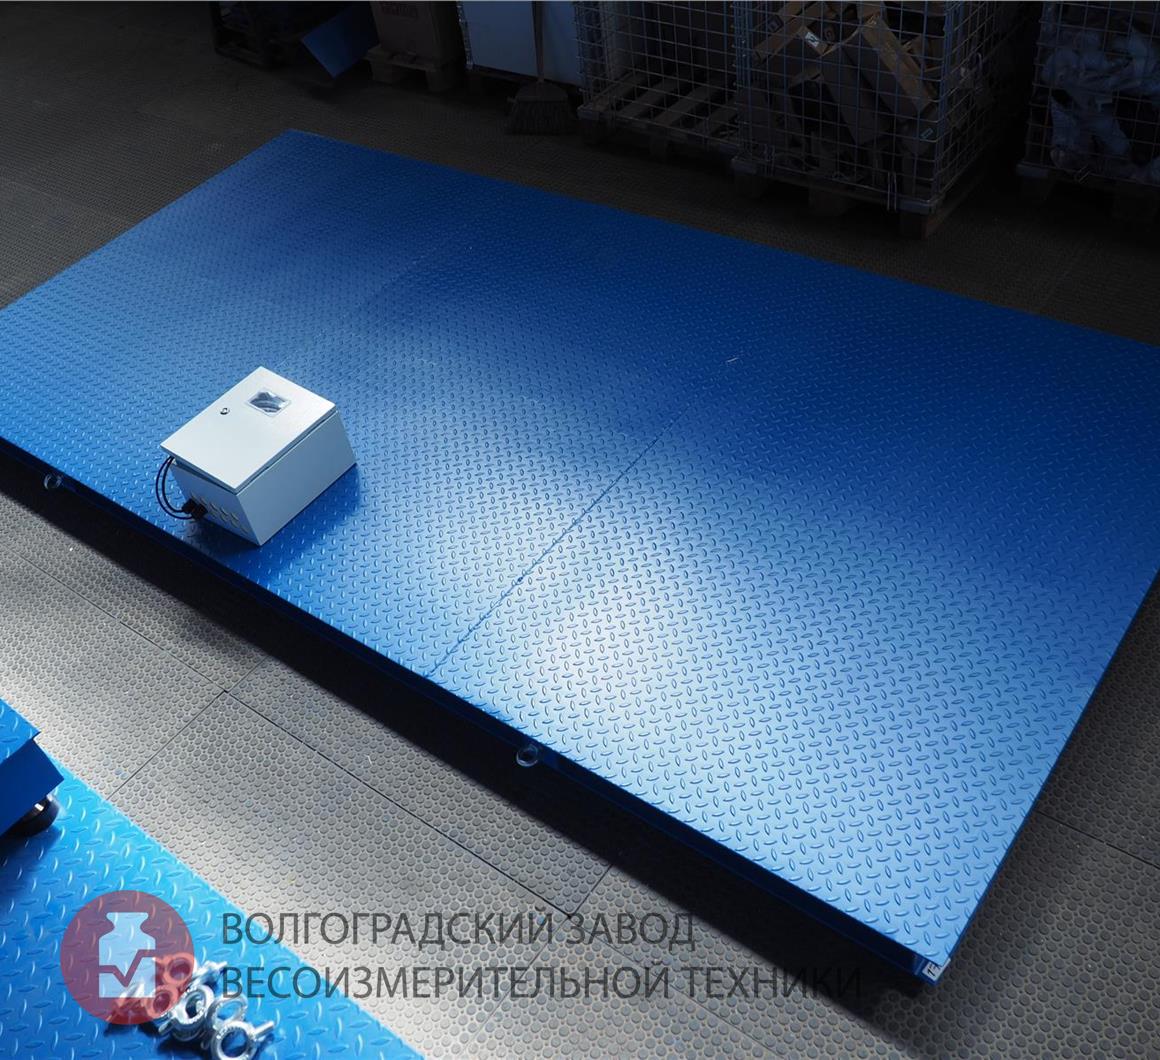 Платформенные весы ЭЛЬТОН-7500кг (2500 х 3000 мм) с климатическим шкафом (режим работы до -30С)